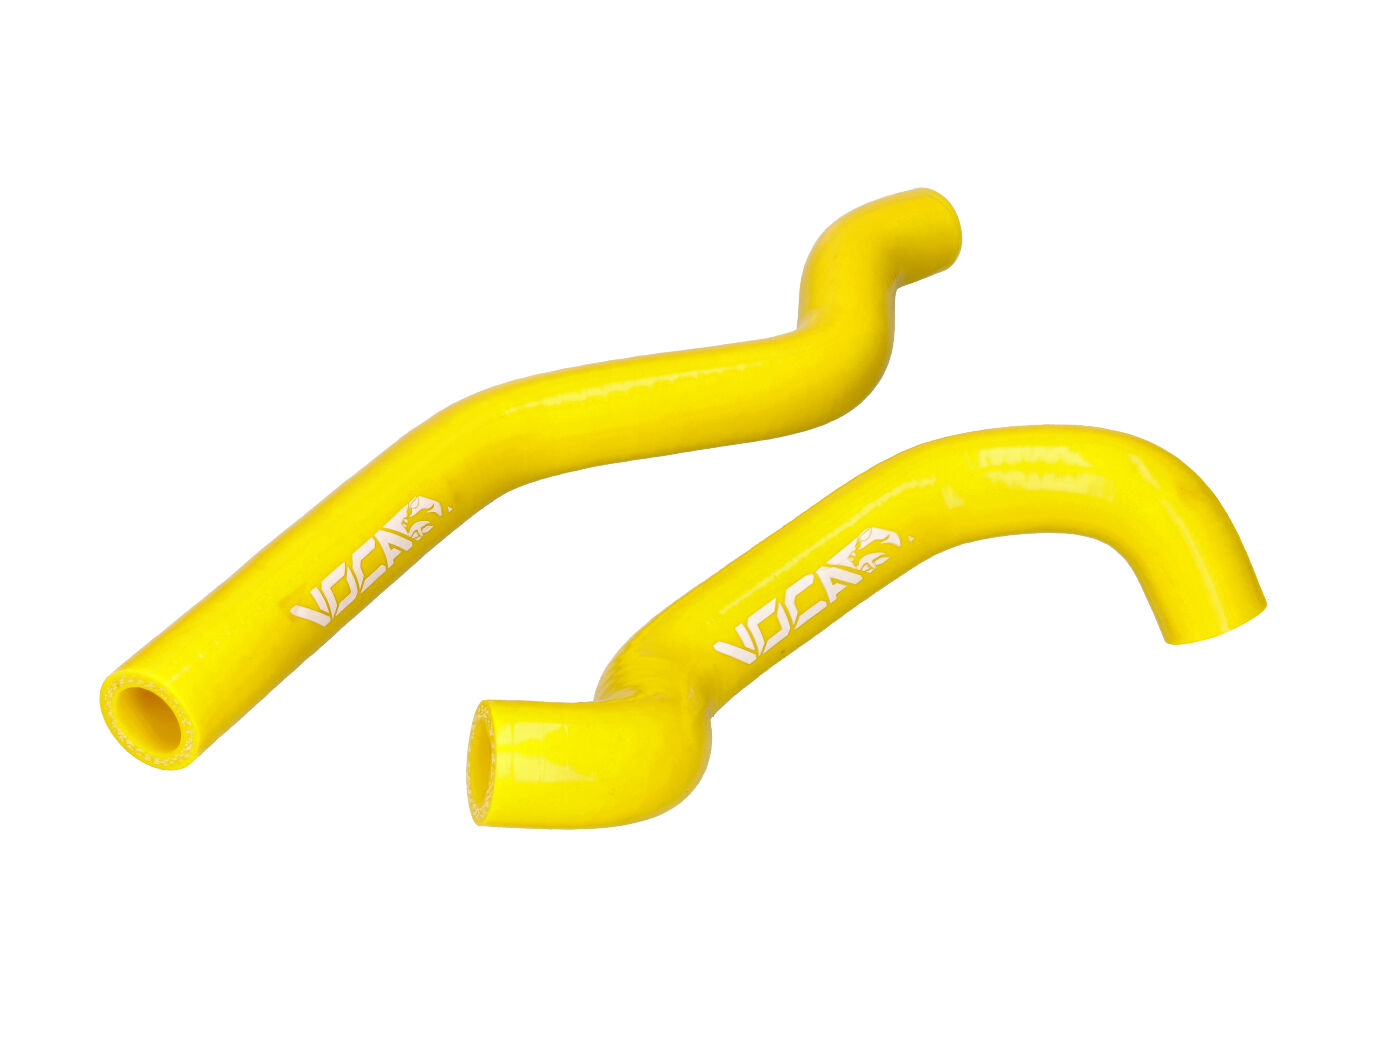 KühlSlang Kit Voca HQ versterkt geel voor Rieju MRT, Sherco, Beta AM6 Euro3, Euro4